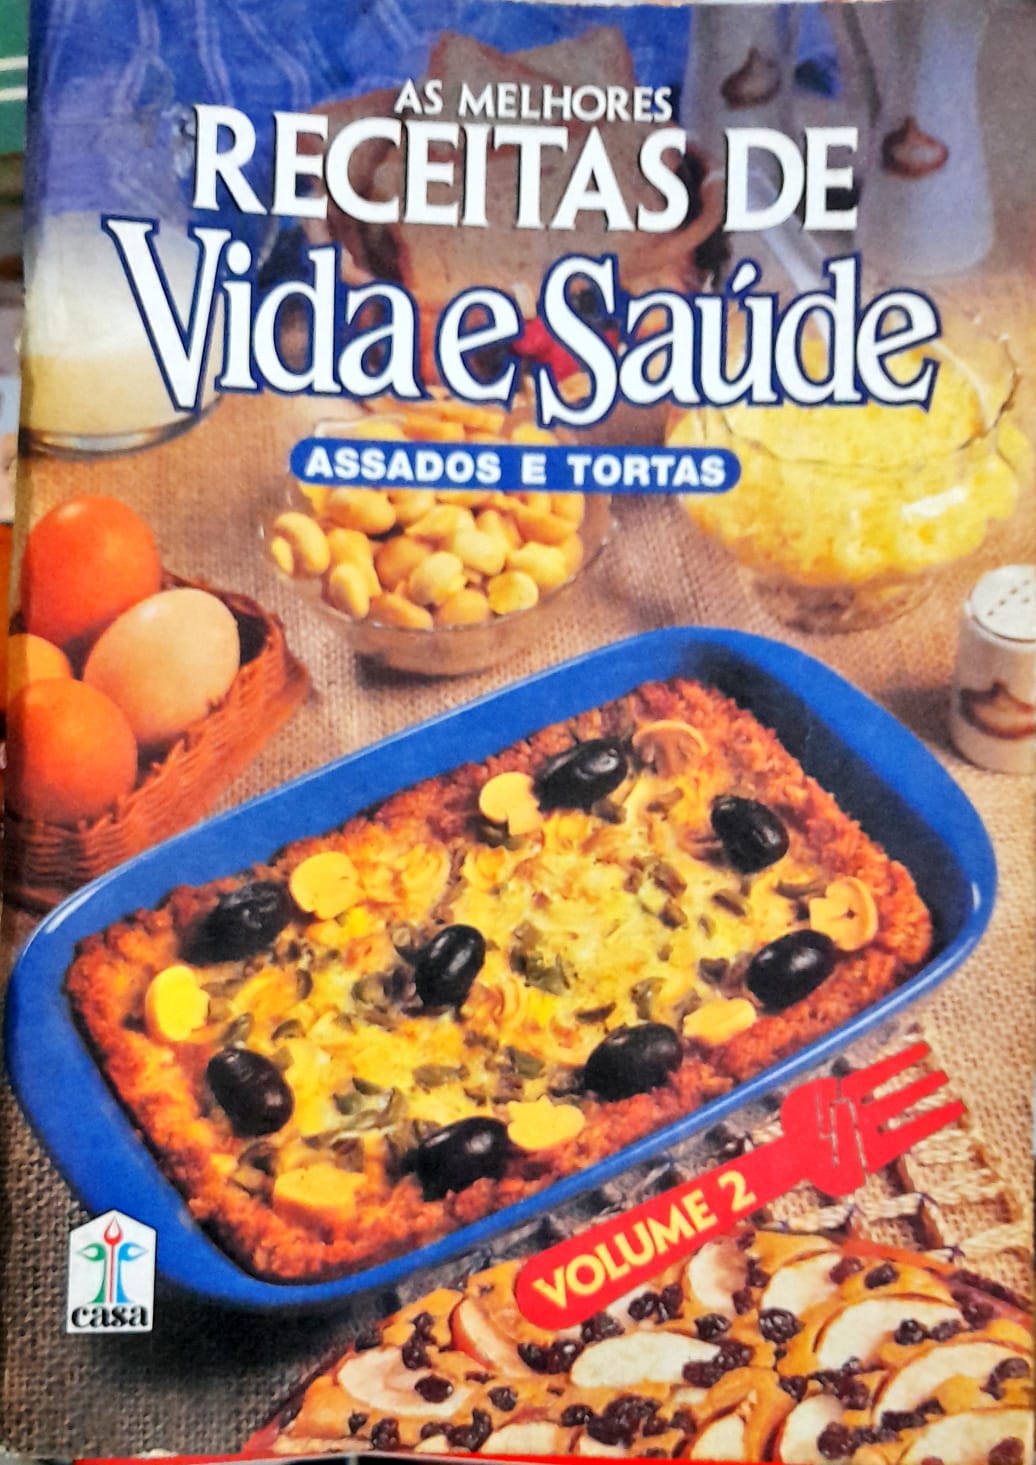 https://higinocultural.com.br/wp-content/uploads/2022/11/Culinaria-As-Melhores-Receitas-Vida-E-Saude-Assados-Volume-2.jpg